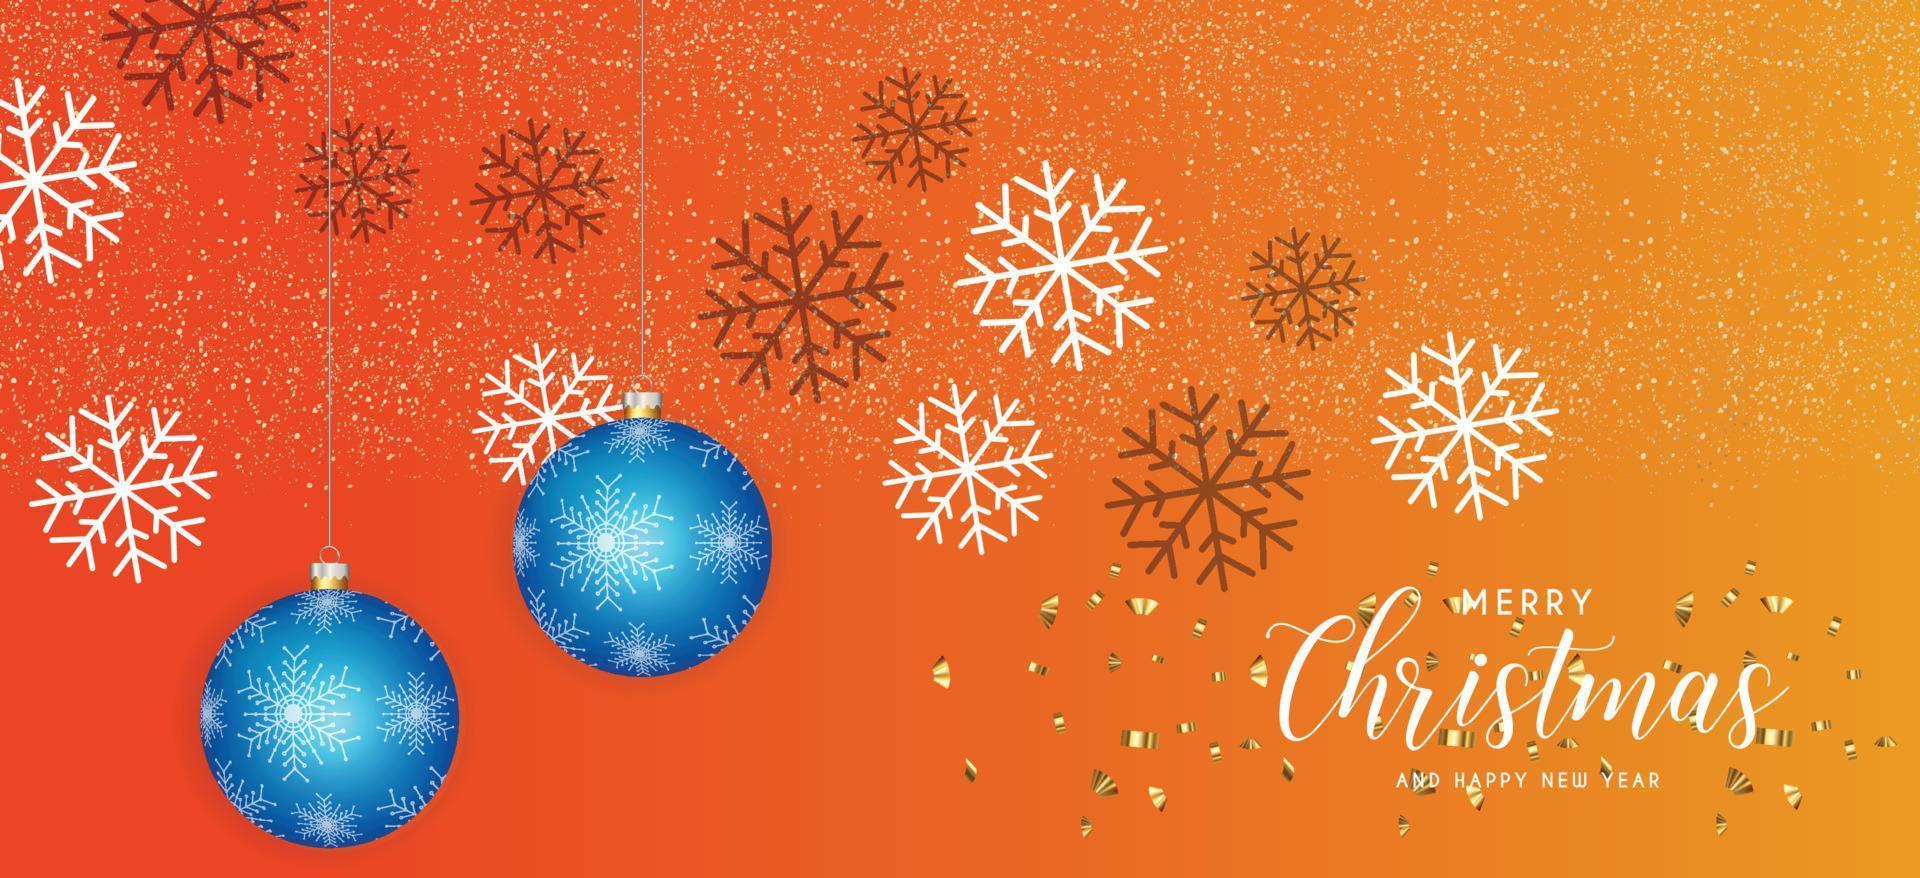 festlicher weihnachten orangefarbener hintergrund mit goldenen weihnachtsdekorationen der blauen kugel und goldenem glitzern. Vektor-Illustration. vektor